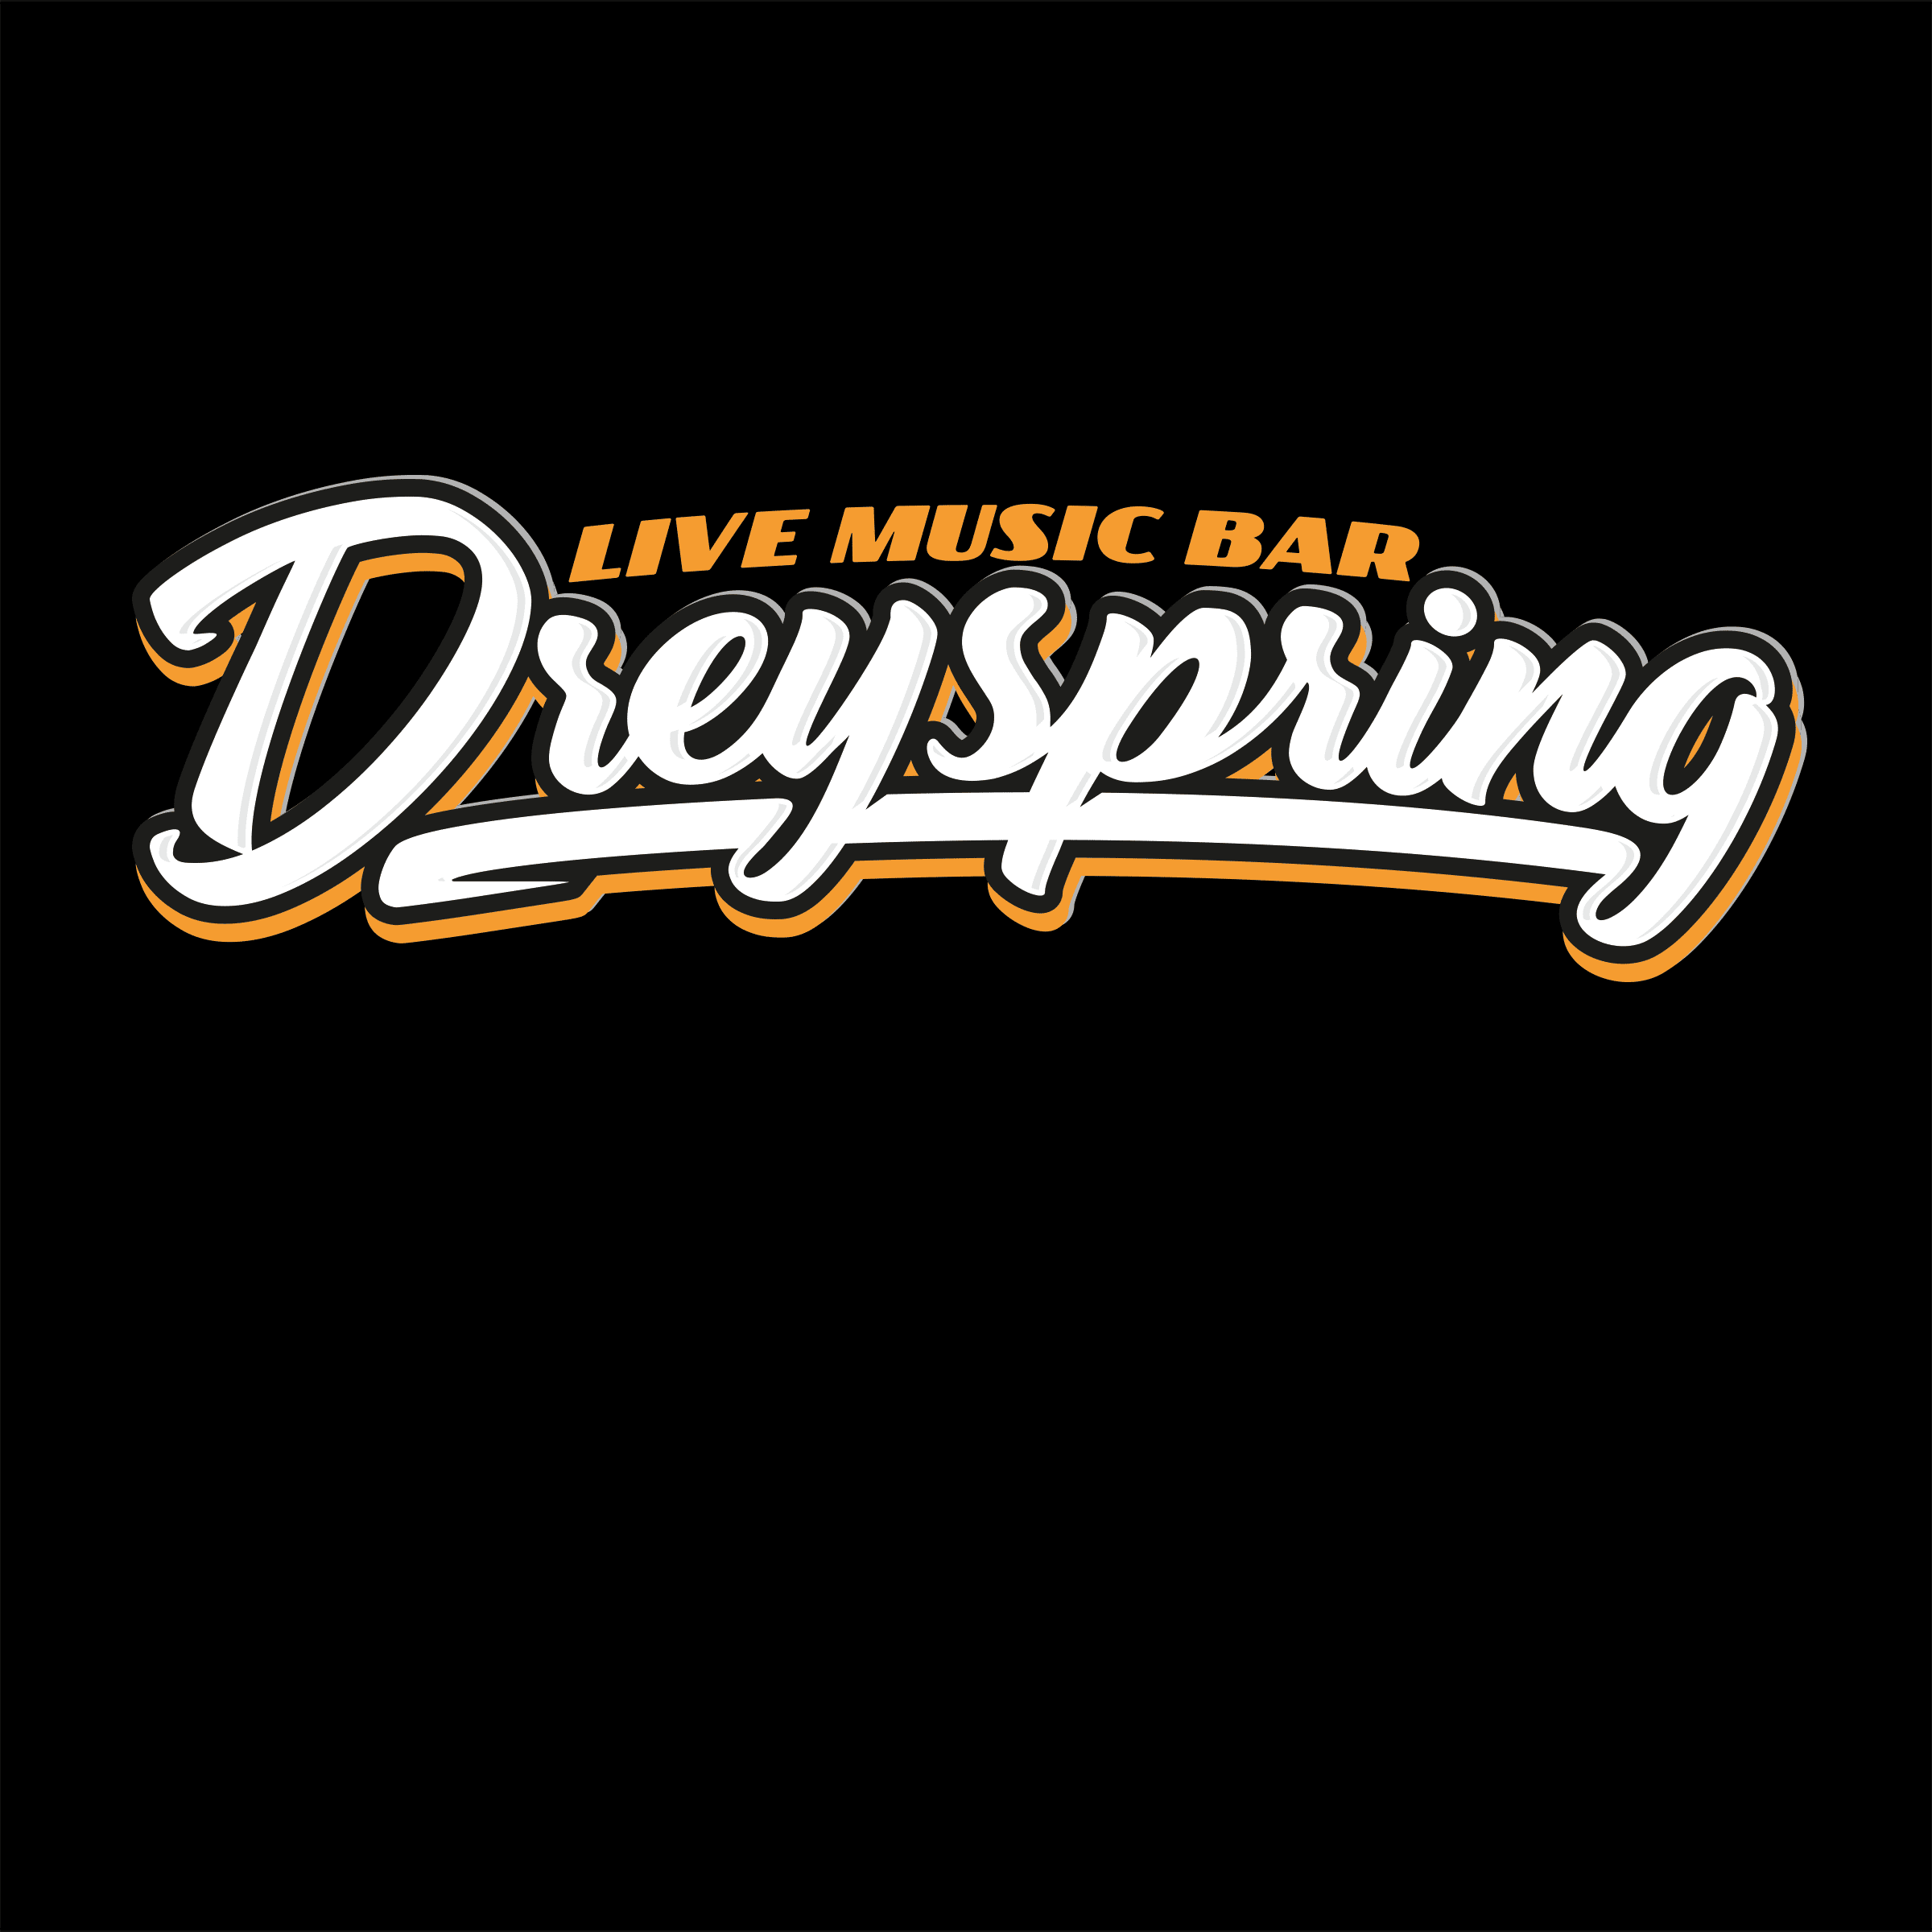 Dreyspring-Logo-weiss-auf-schwarz-1zu1-2400x2400